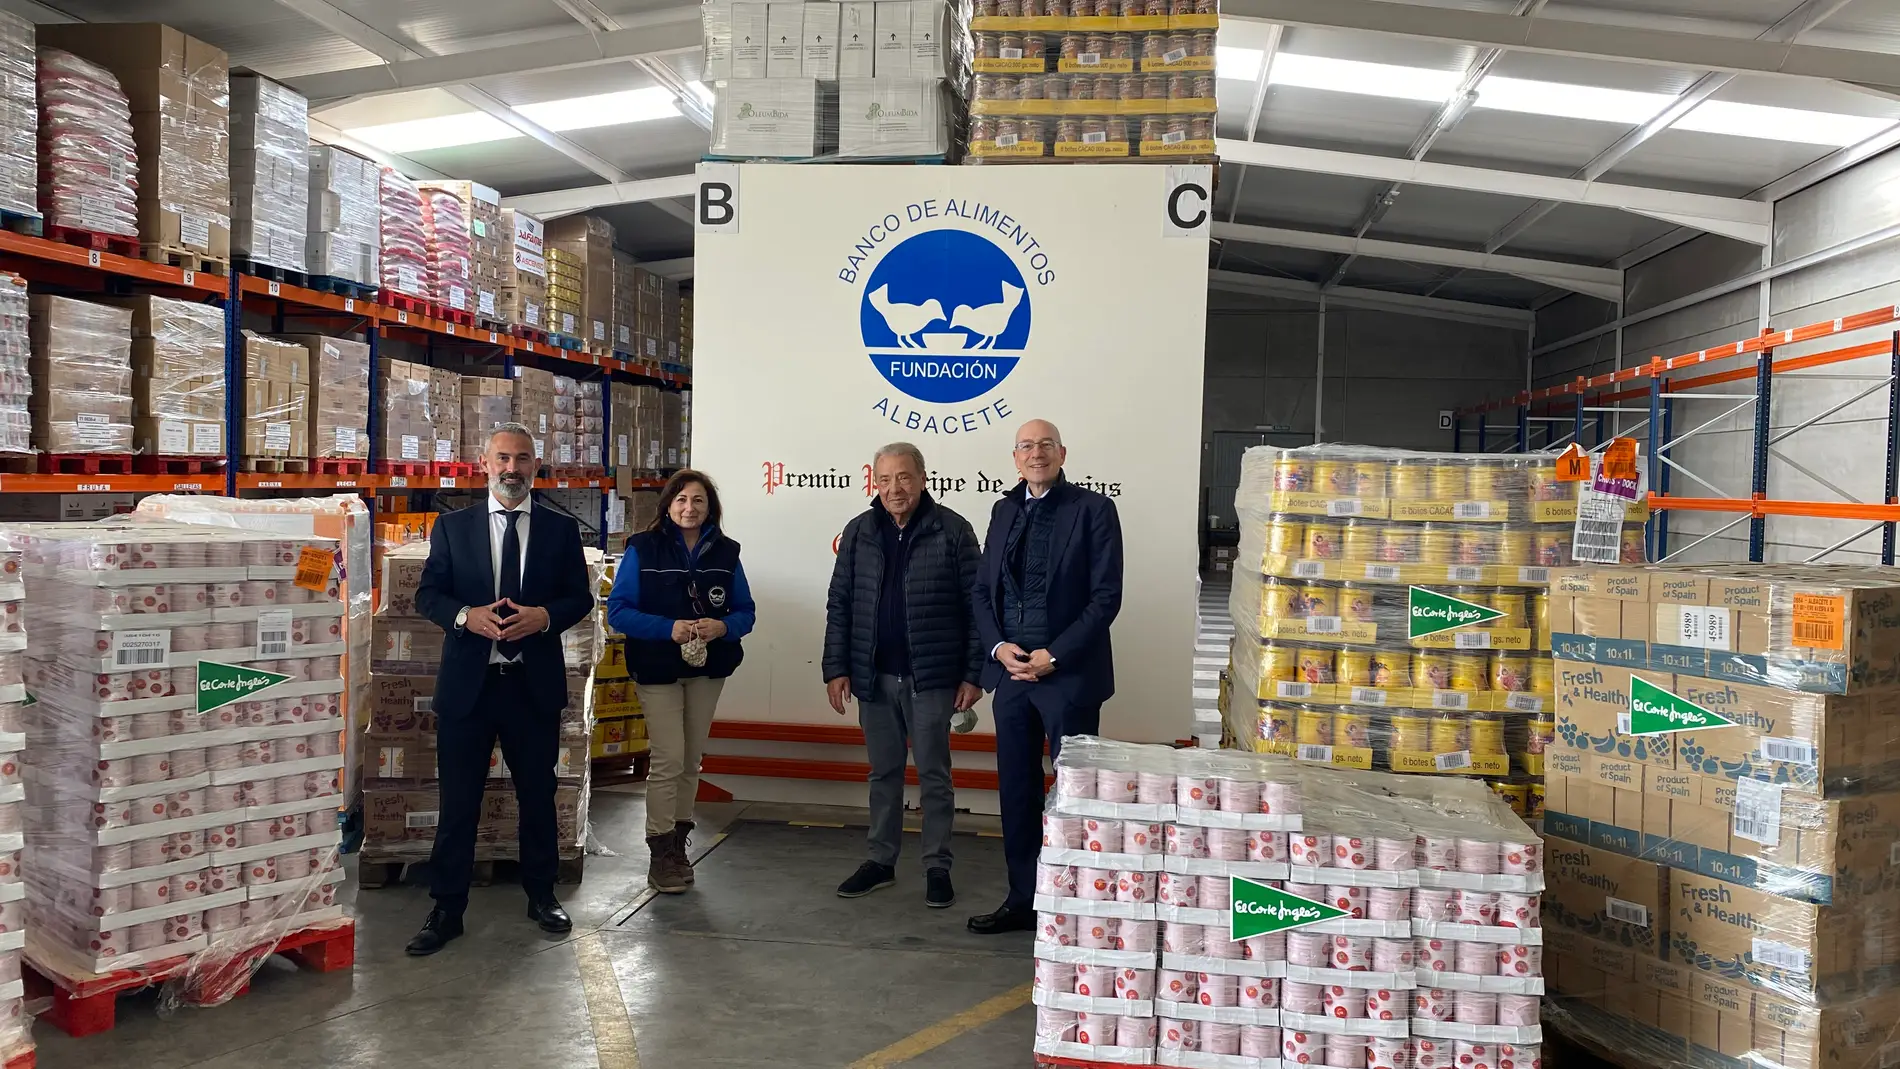 El Corte Ingles entrega 5, 7 toneladas de comida al Banco de Alimentos de Albacete